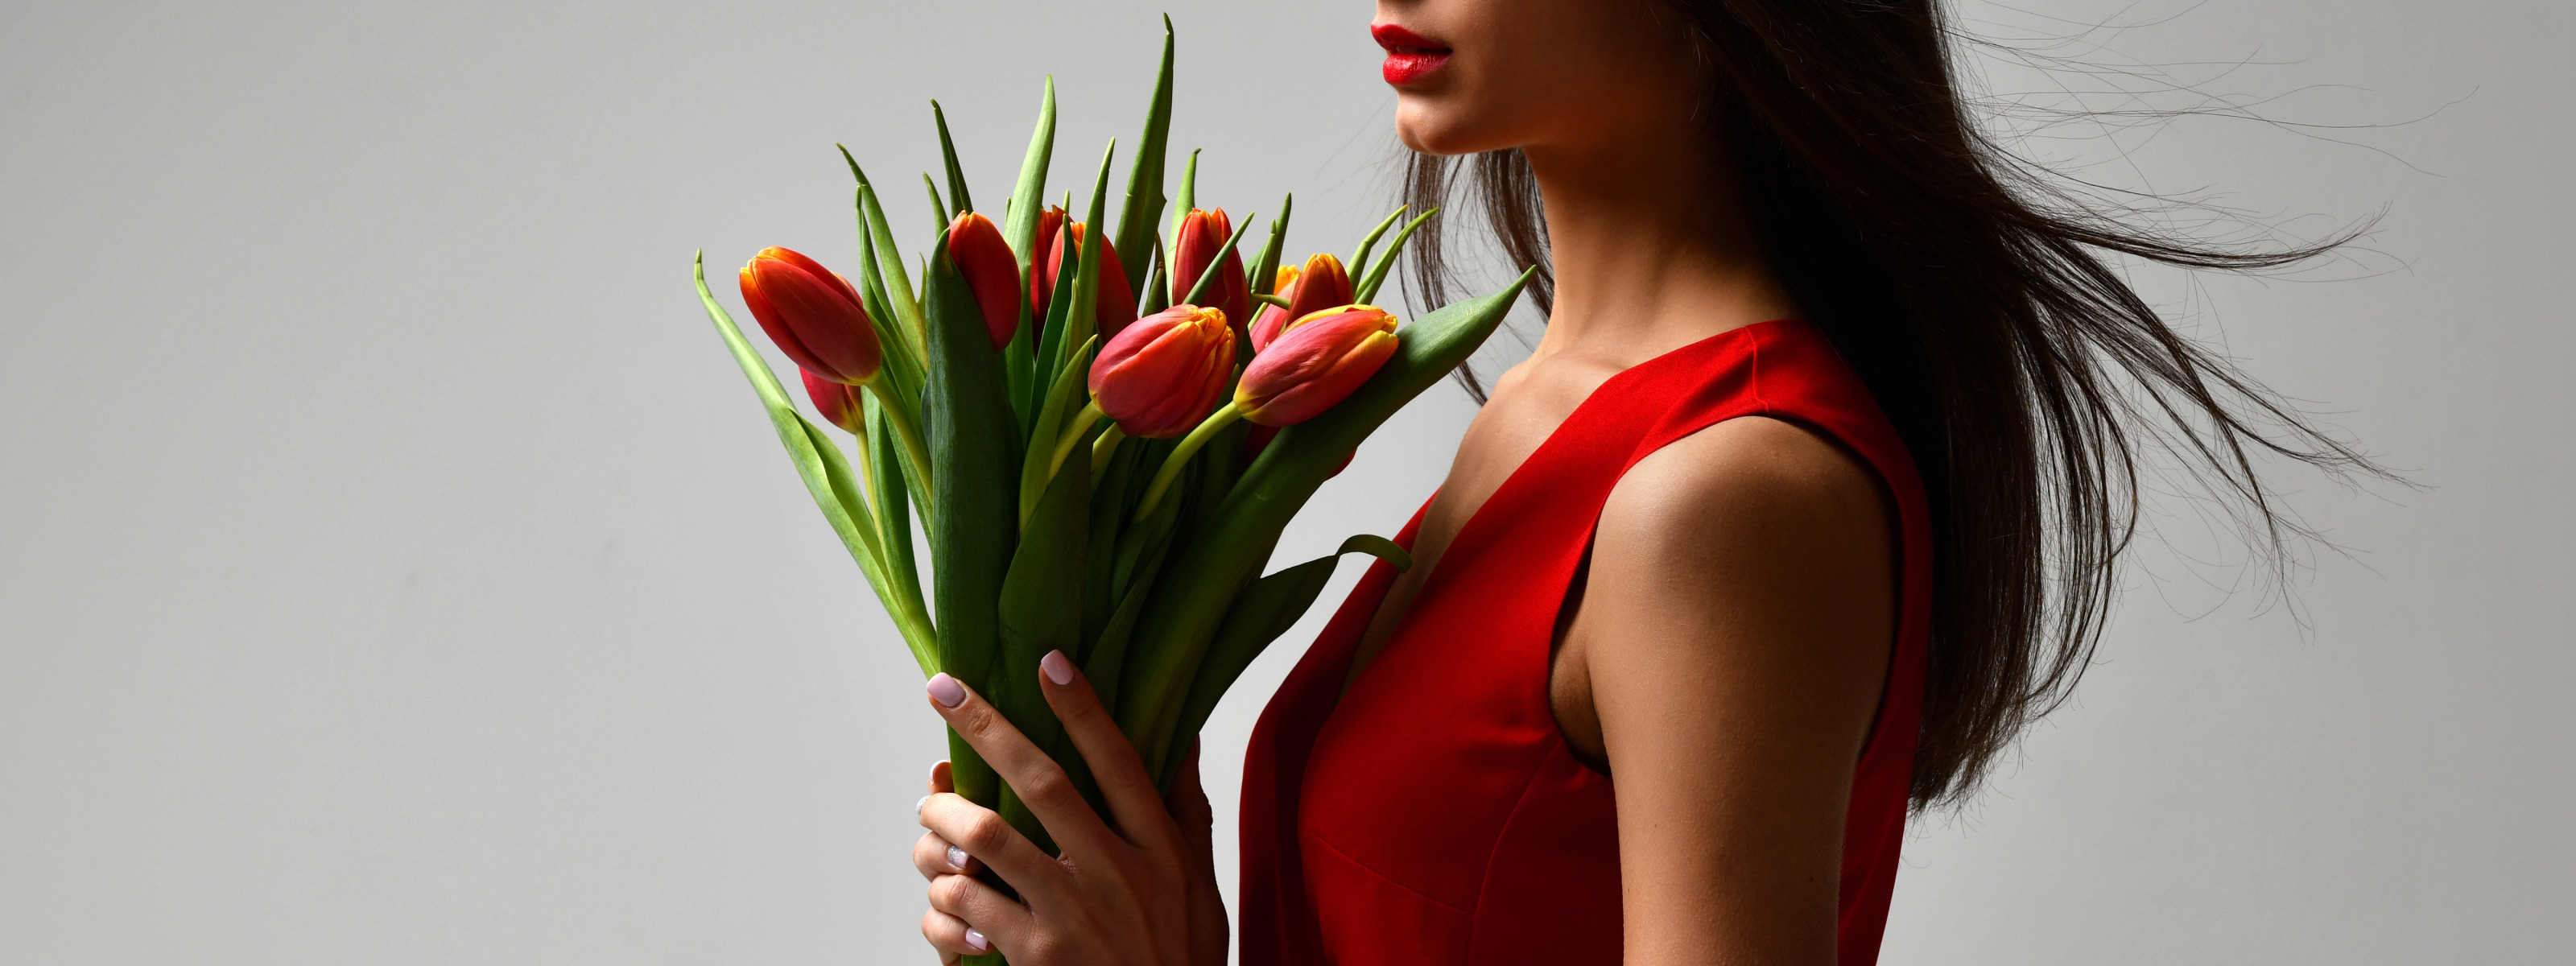 Красивое фото с тюльпанами девушки. Букет "женщине". Женщина с тюльпанами. Девушка с букетом тюльпанов. Фотосессия с тюльпанами.